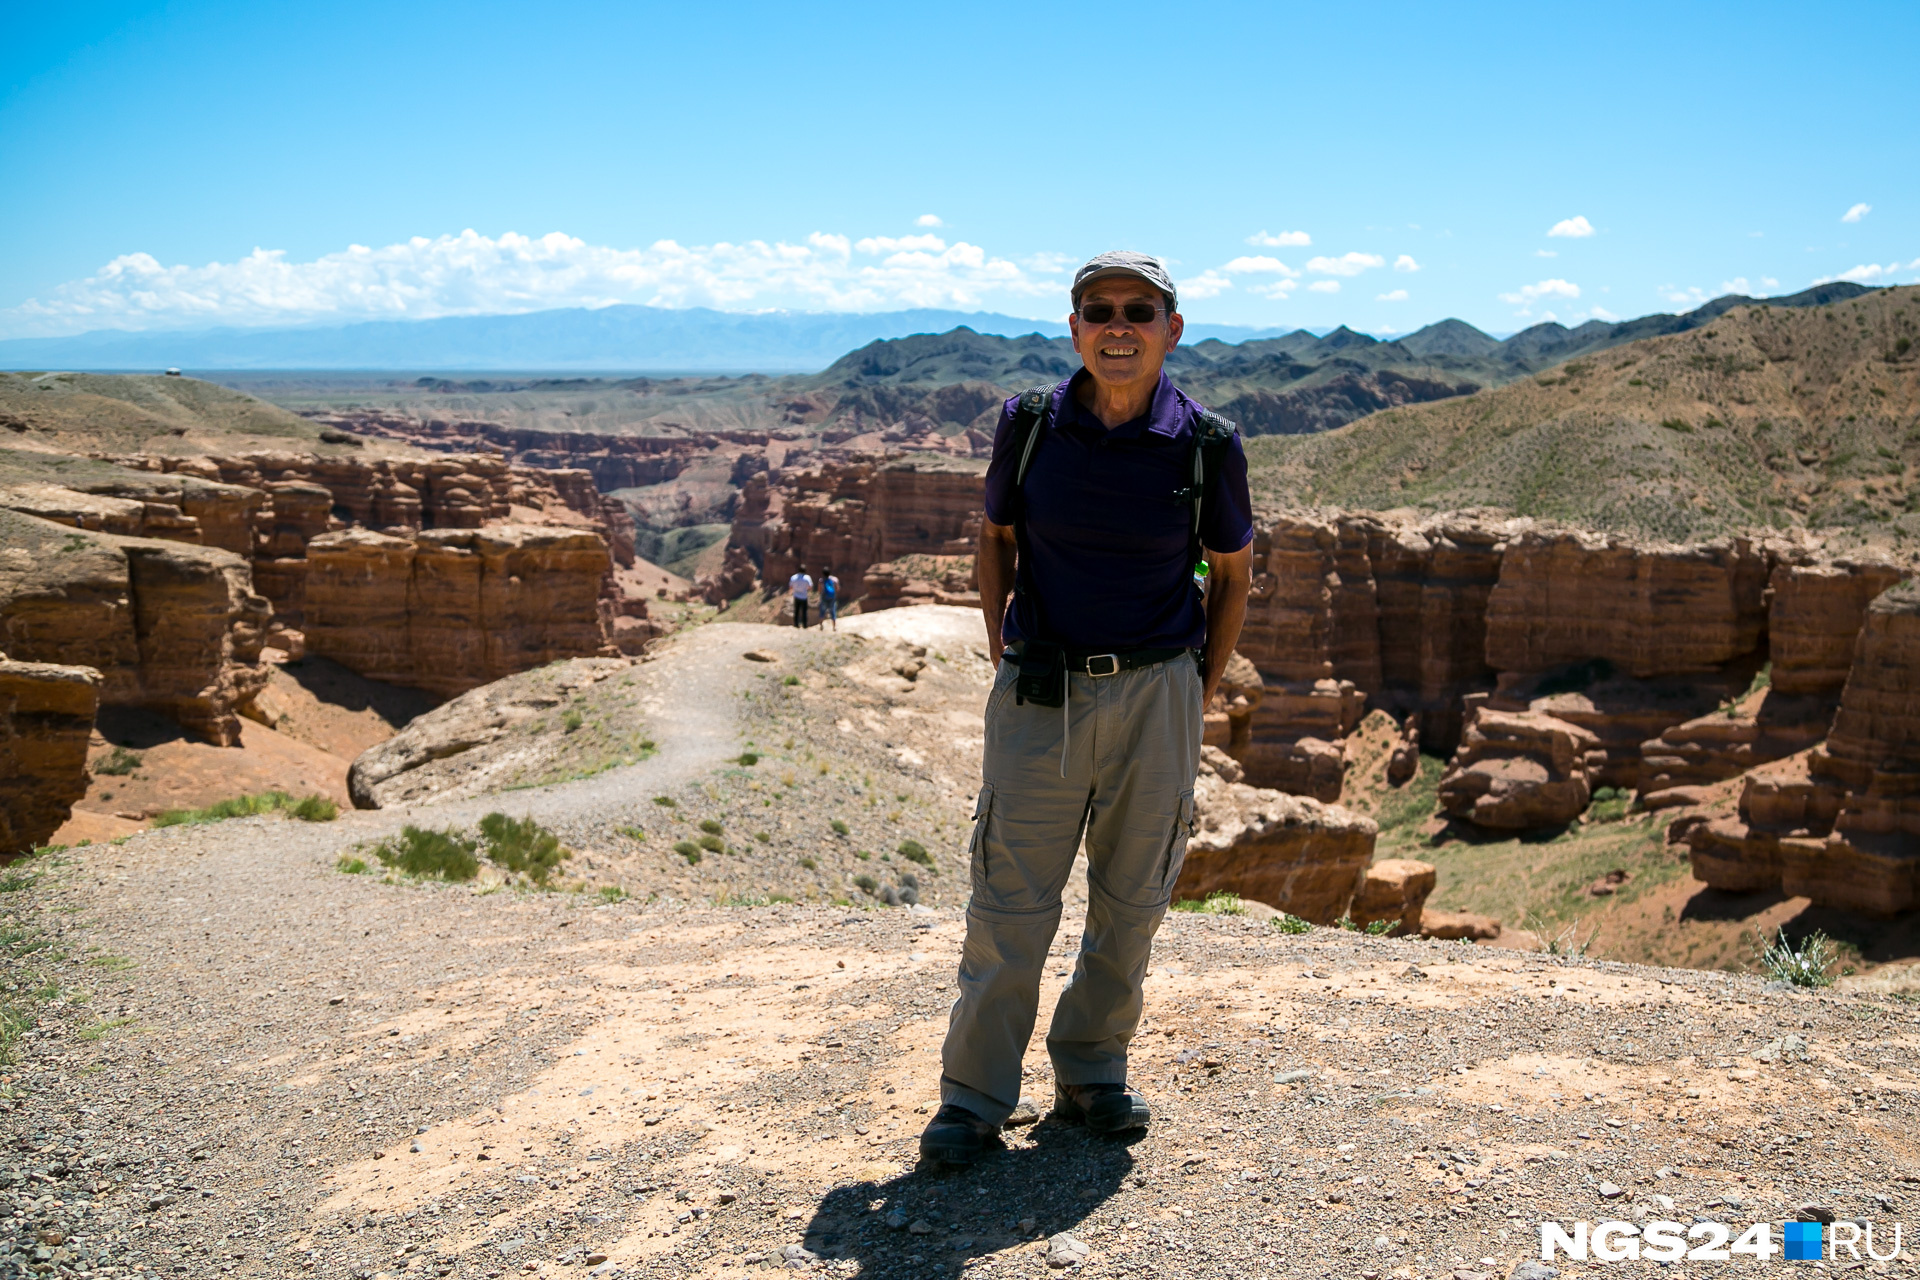 Туристам советуем побывать и в Чарынском каньоне. Американец
Джен Чай приехал его оценить. Говорит,
что это очень похоже на американский Гранд-Каньон, но меньше «раз в 10» его по
размерам.